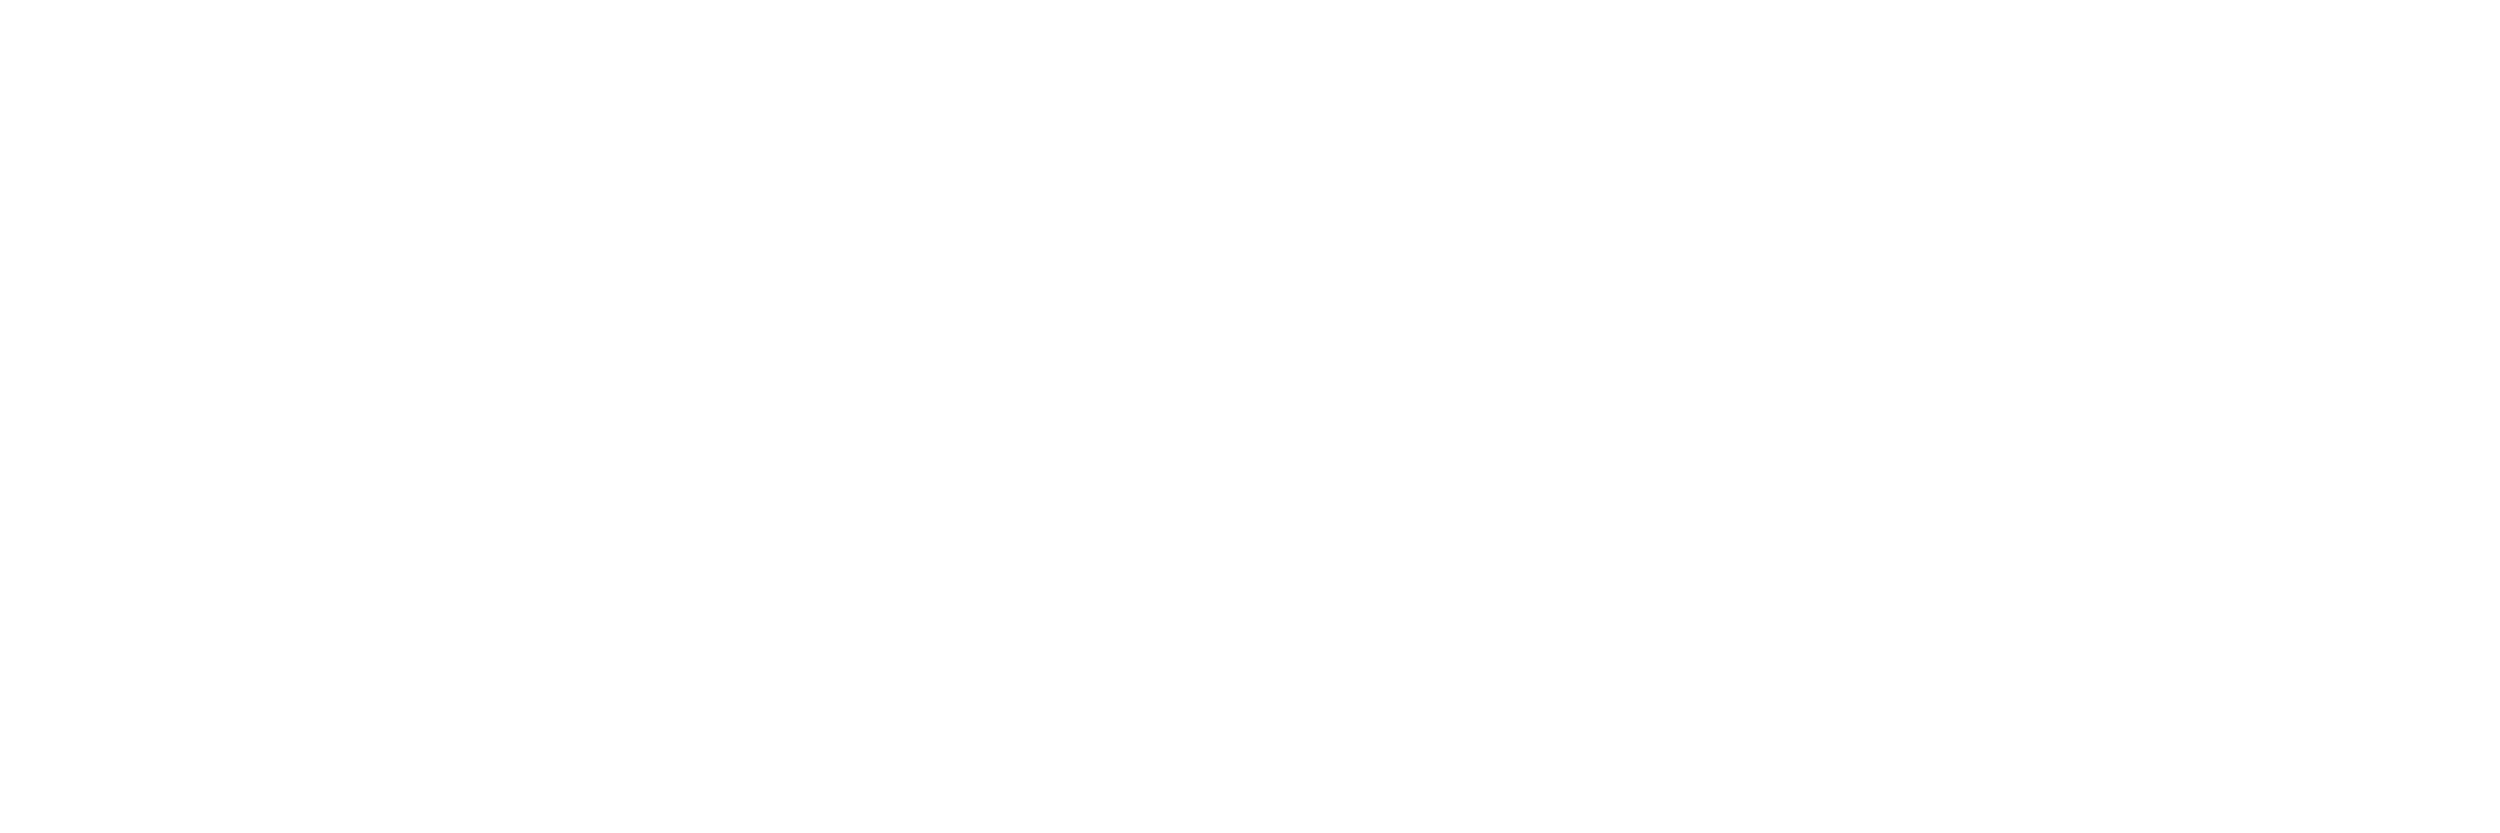 Brighton Community Acupuncture